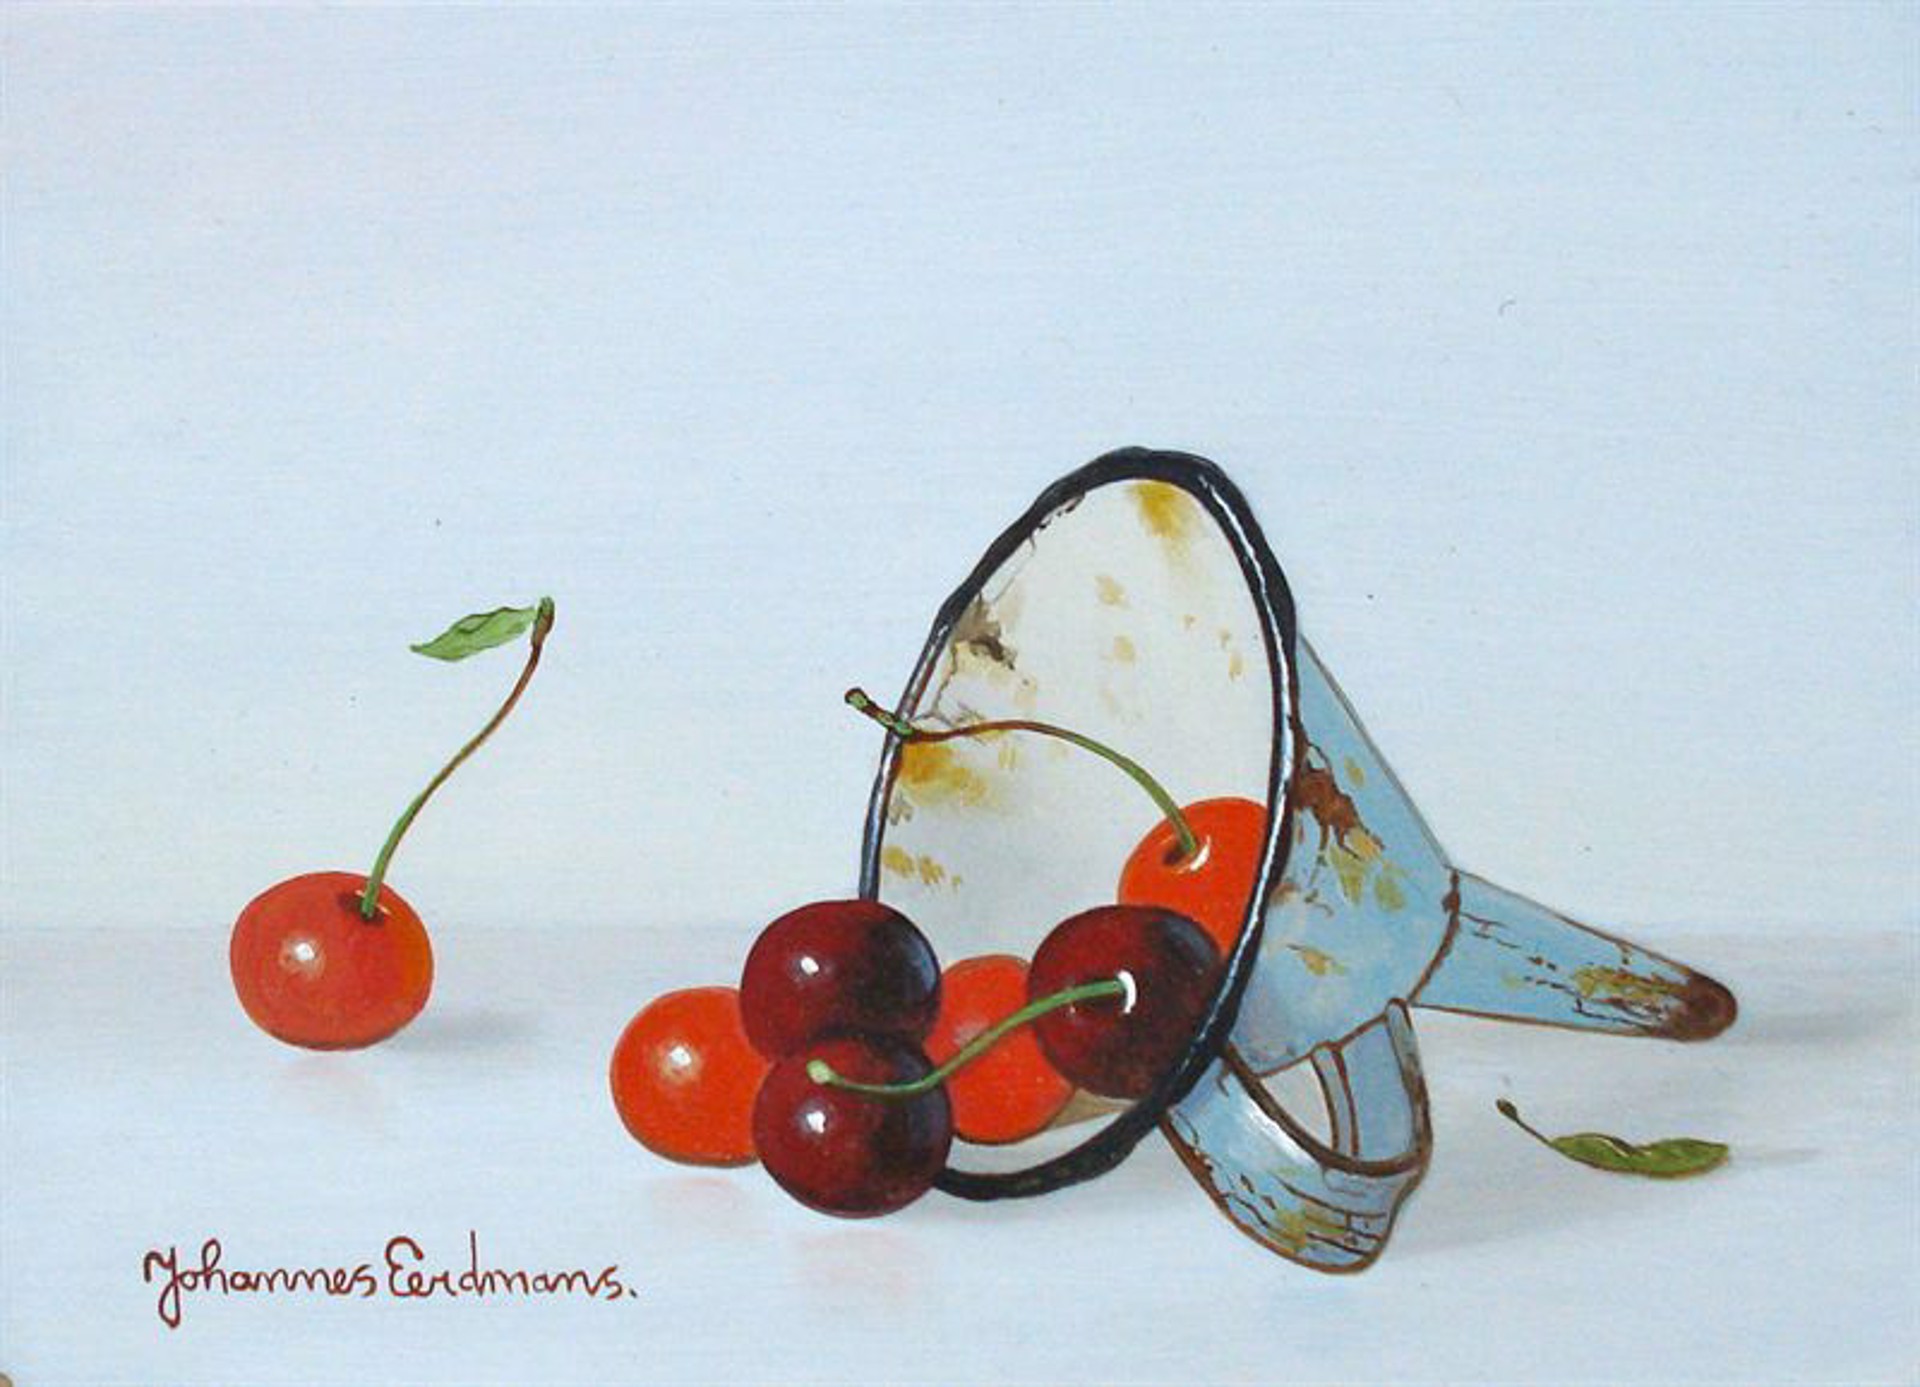 Cherries with Antique Scoop by Johannes Eerdmans